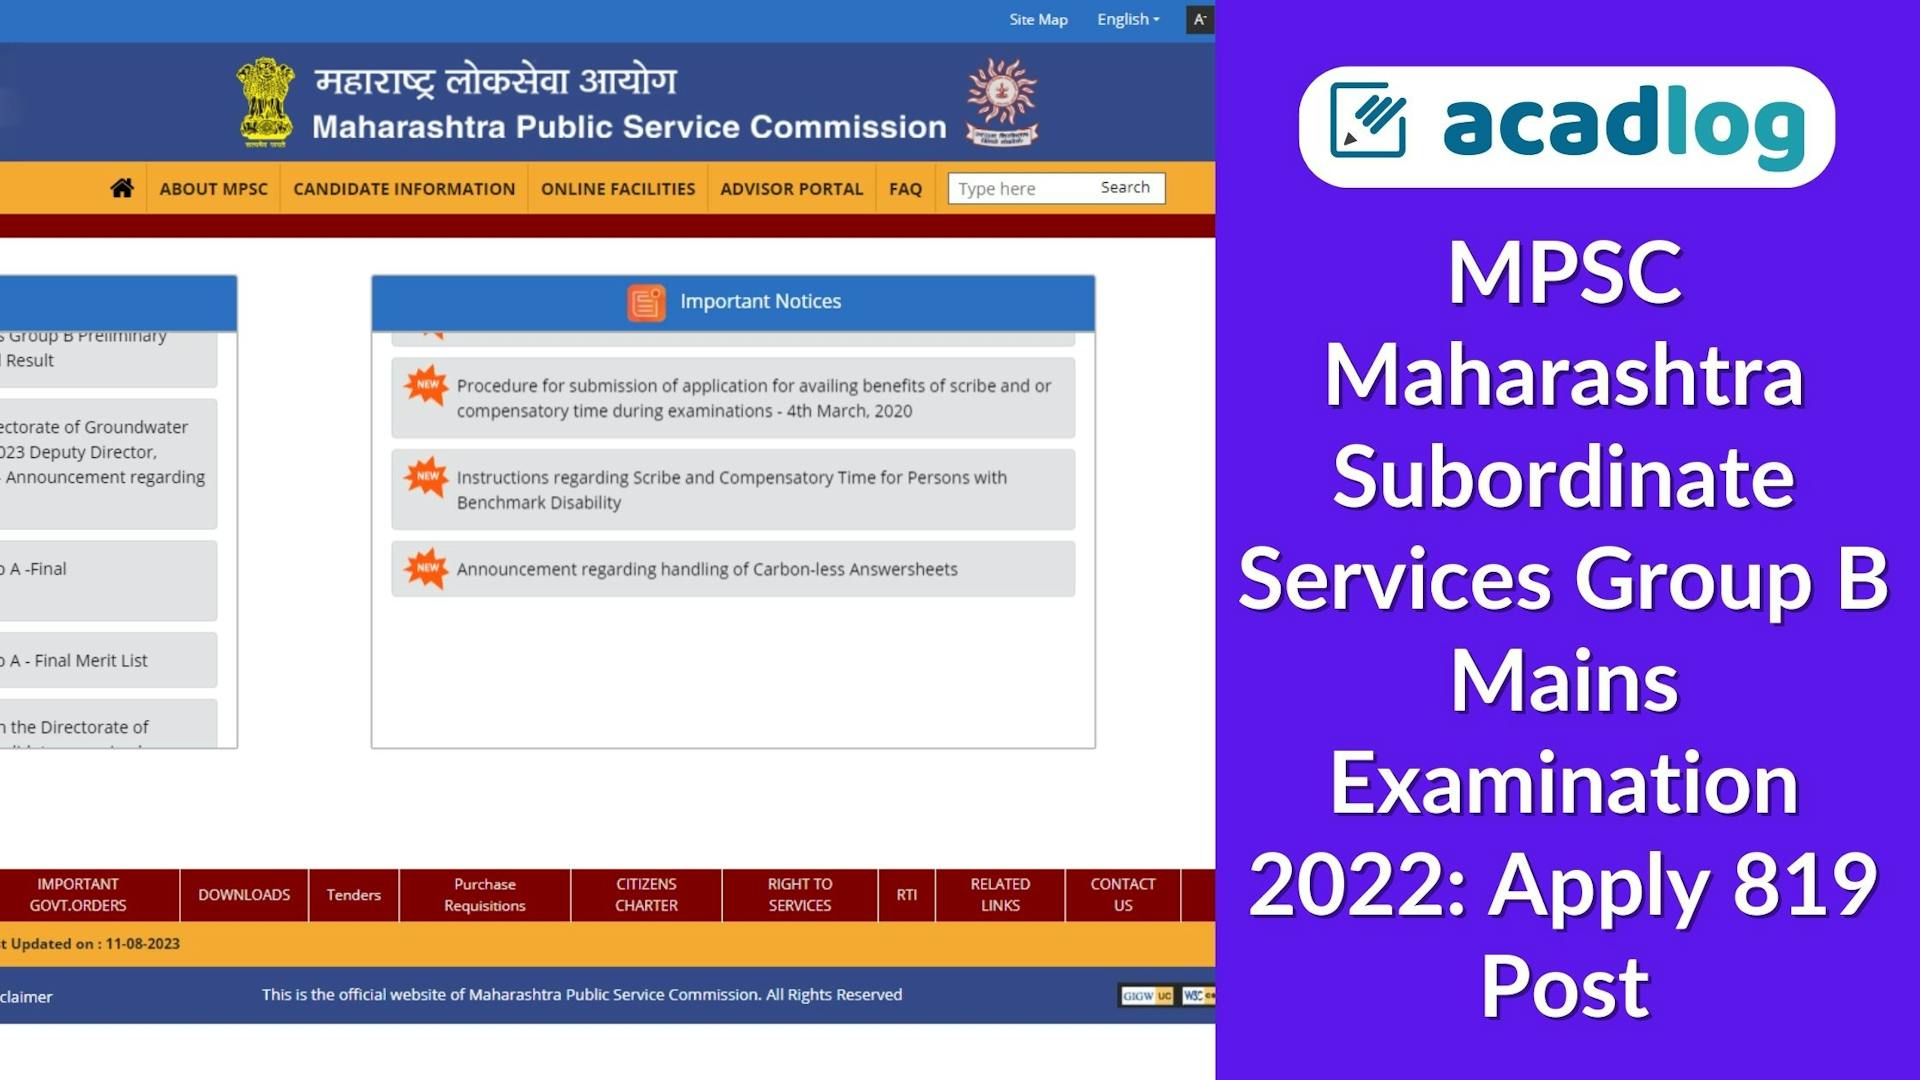 MPSC Maharashtra Subordinate Services Group B Mains Examination 2022: Apply 819 Post